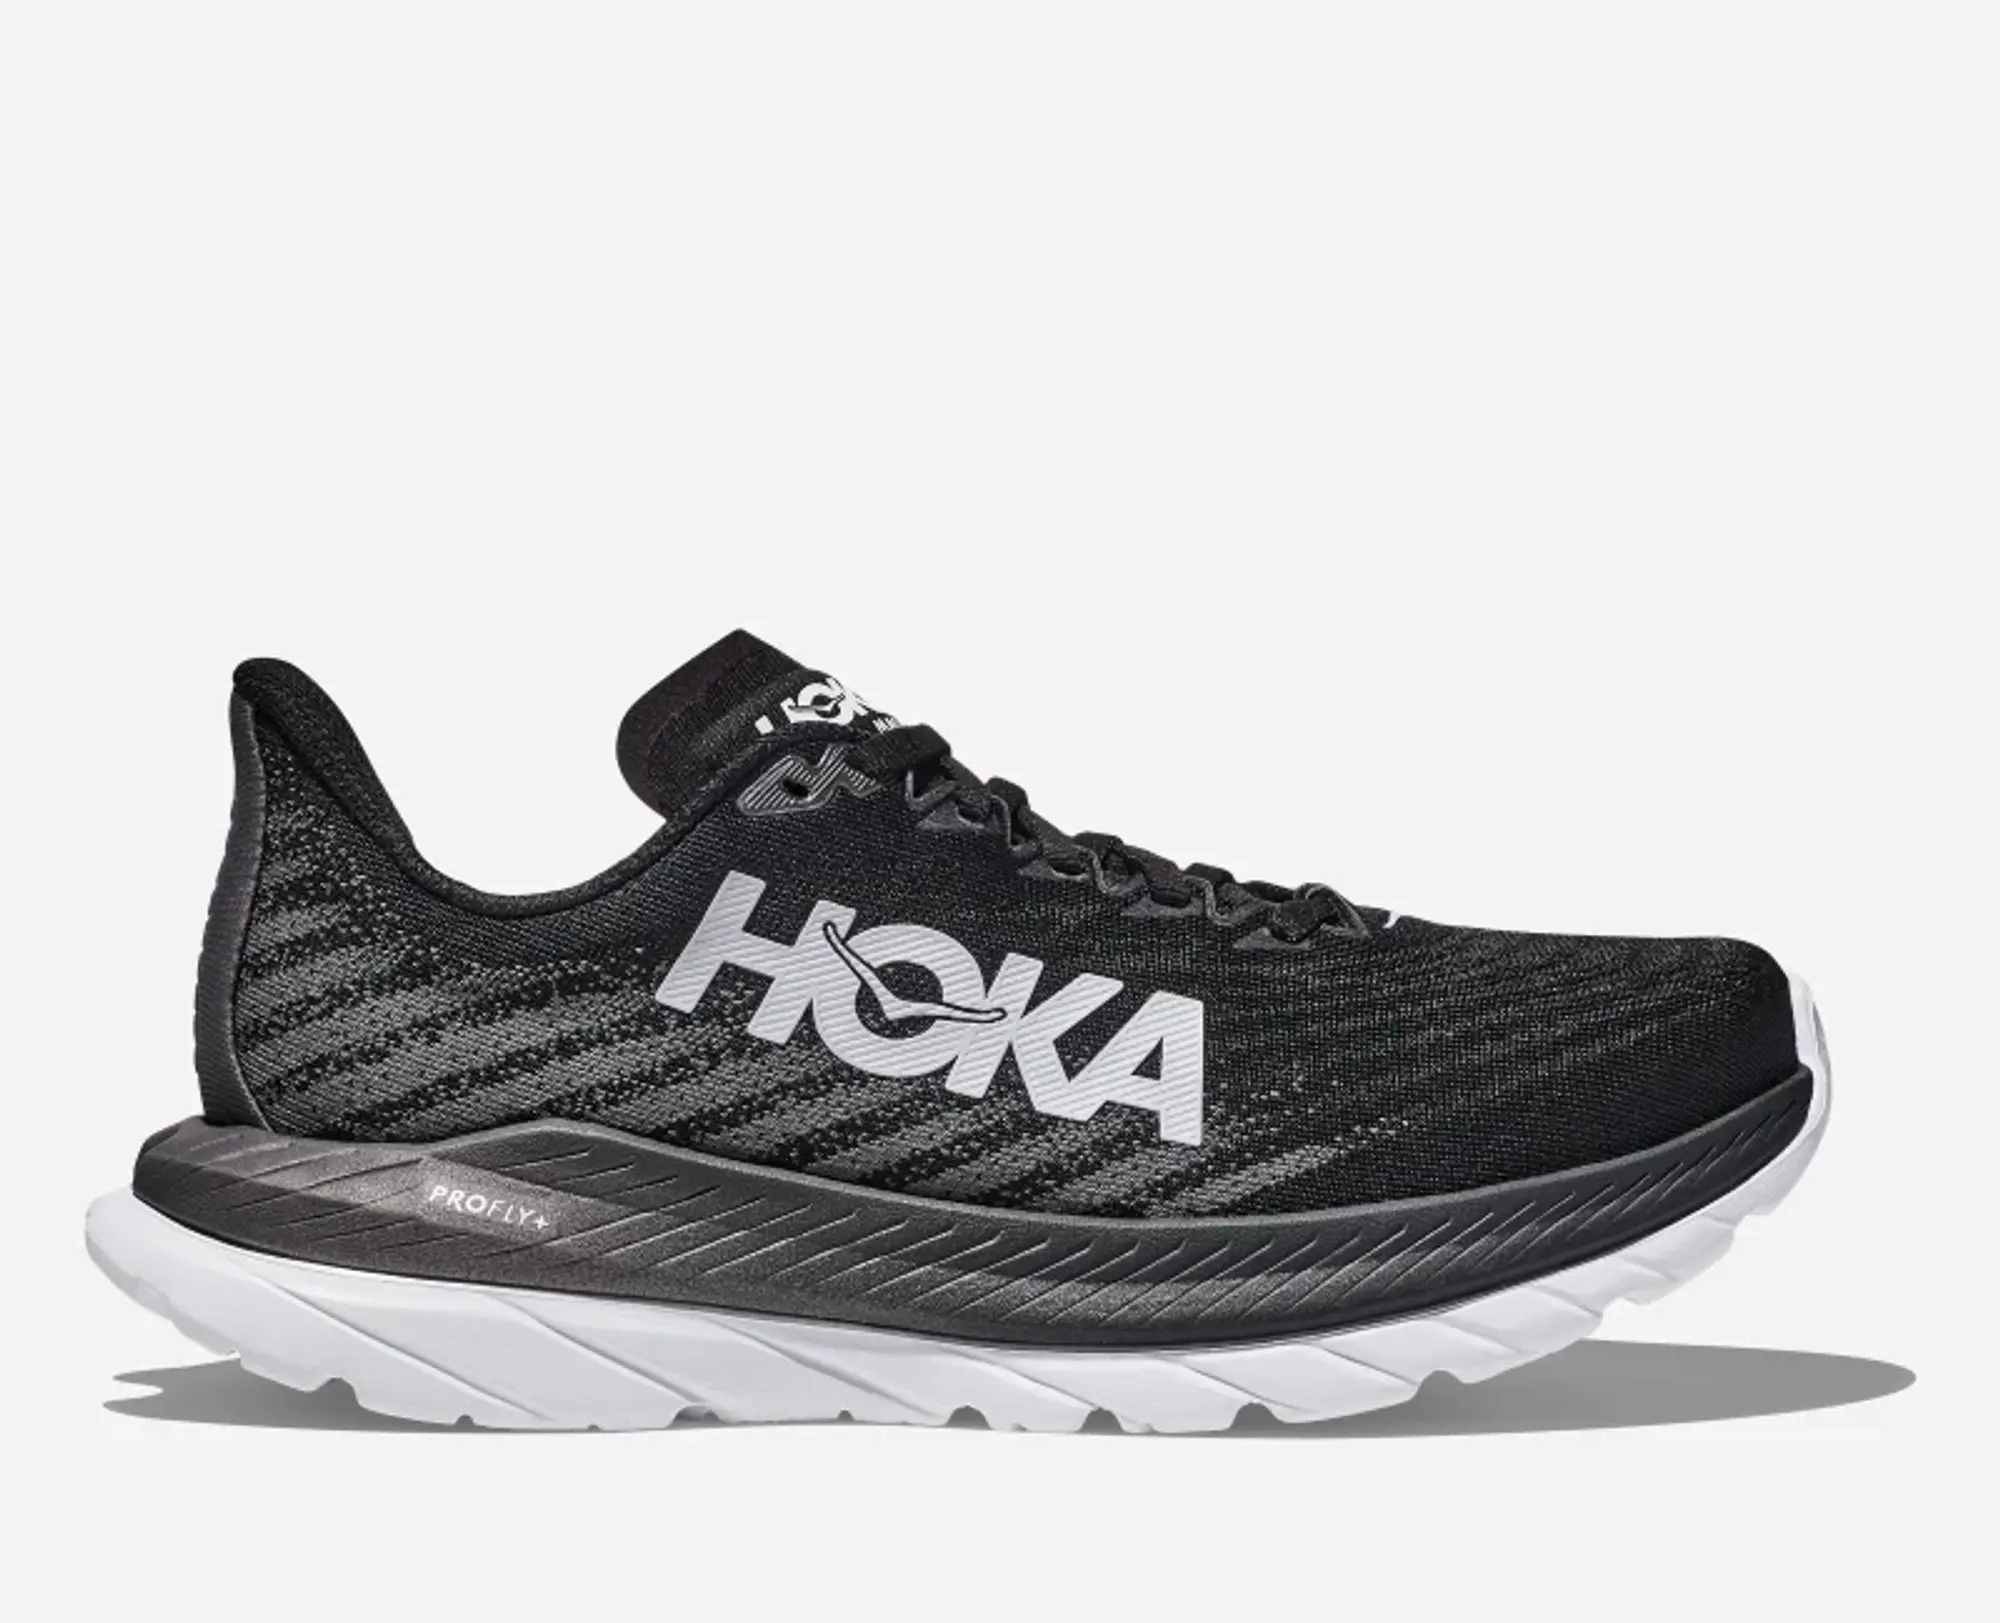 Hoka One One HOKA Men's Mach 5 Running Shoes in Black/Castlerock